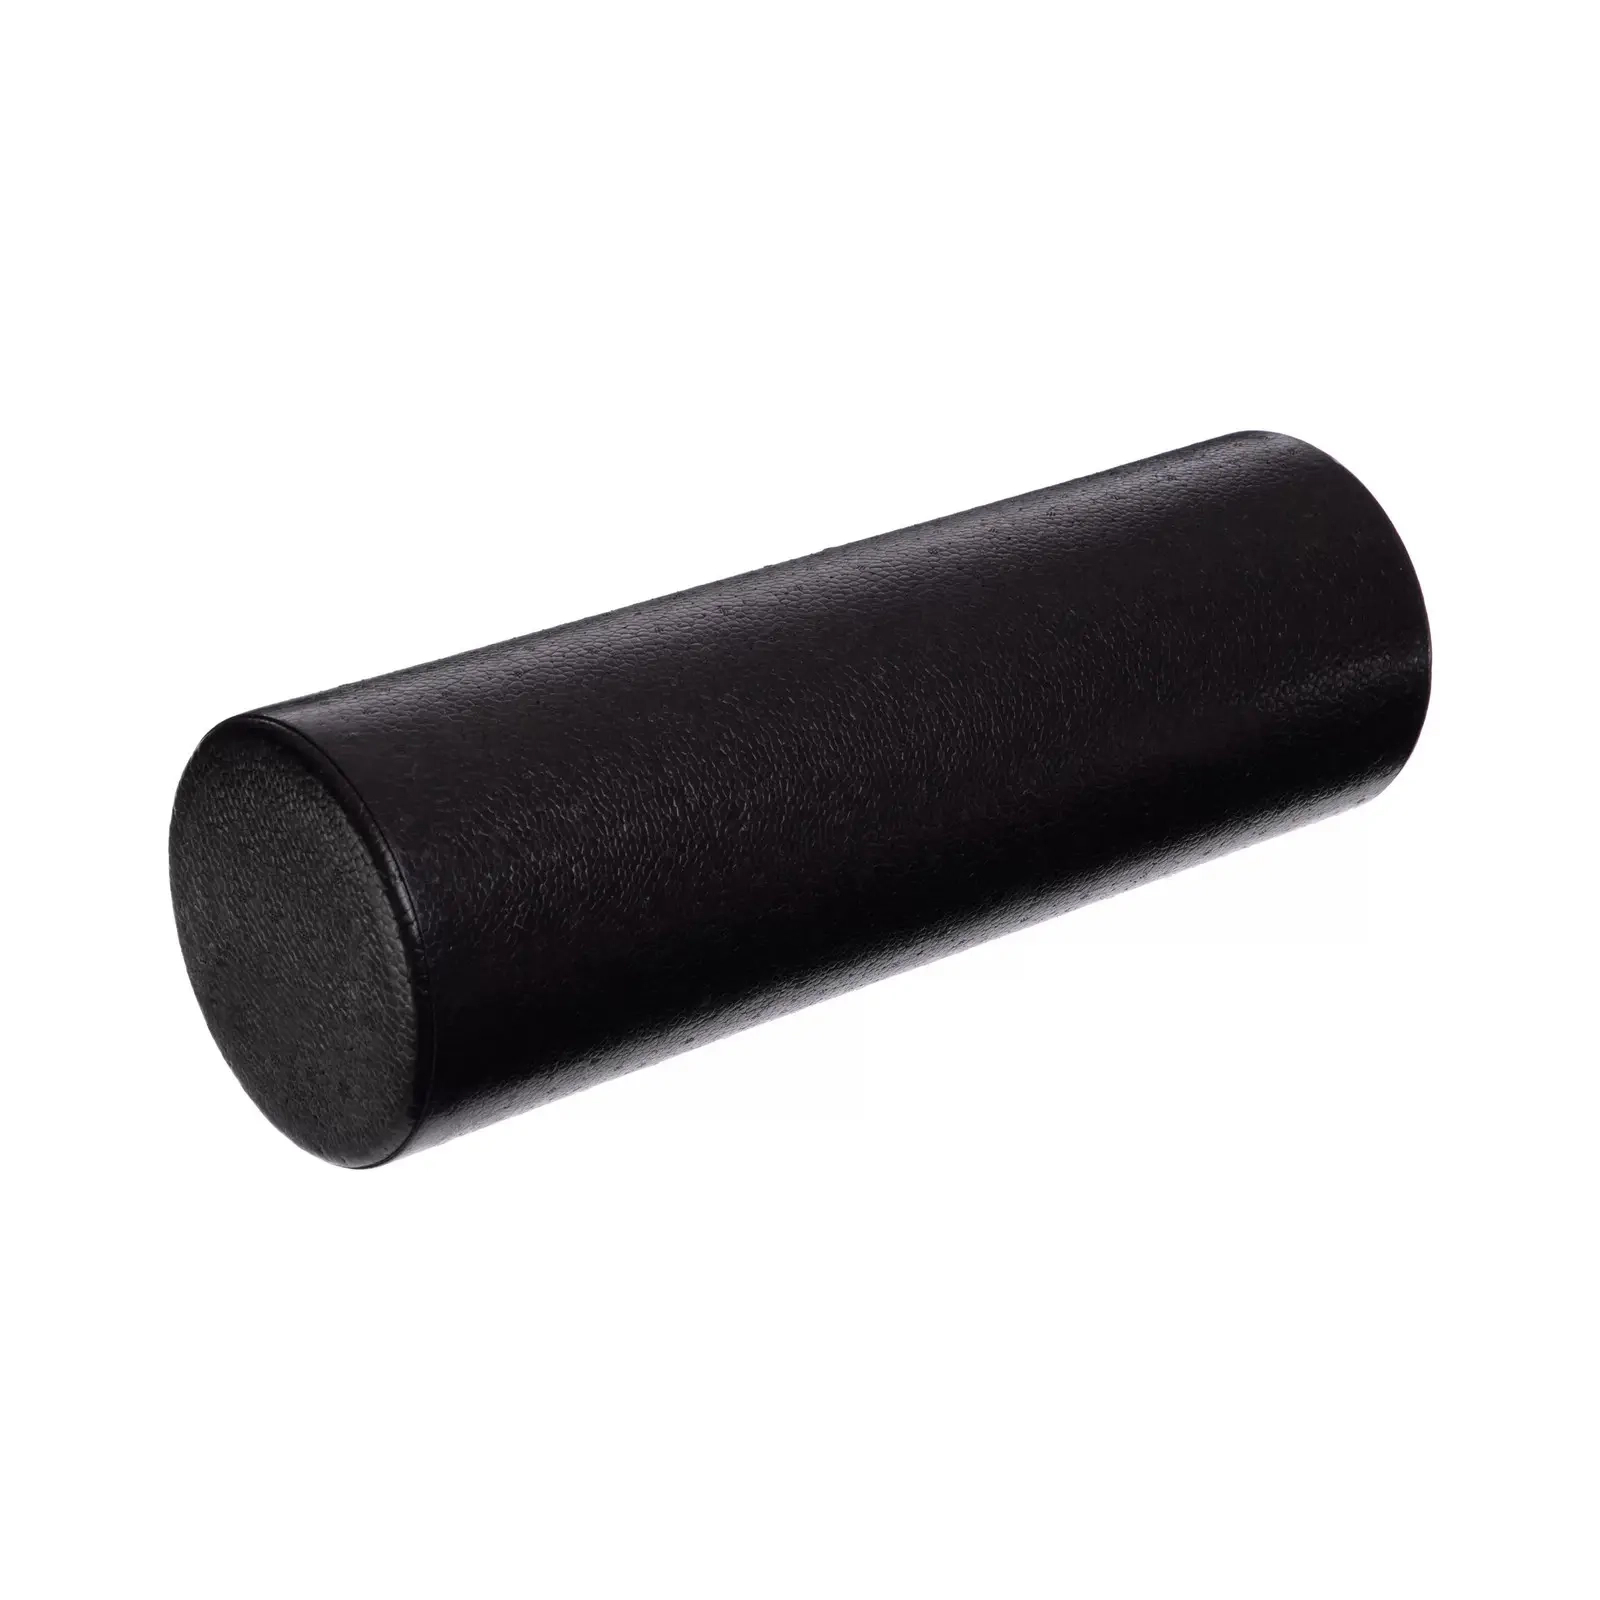 Масажный ролик U-Powex гладкий UP_1008 EPP foam roller 45х15cm (UP_1008_epp_(45cm)) изображение 2